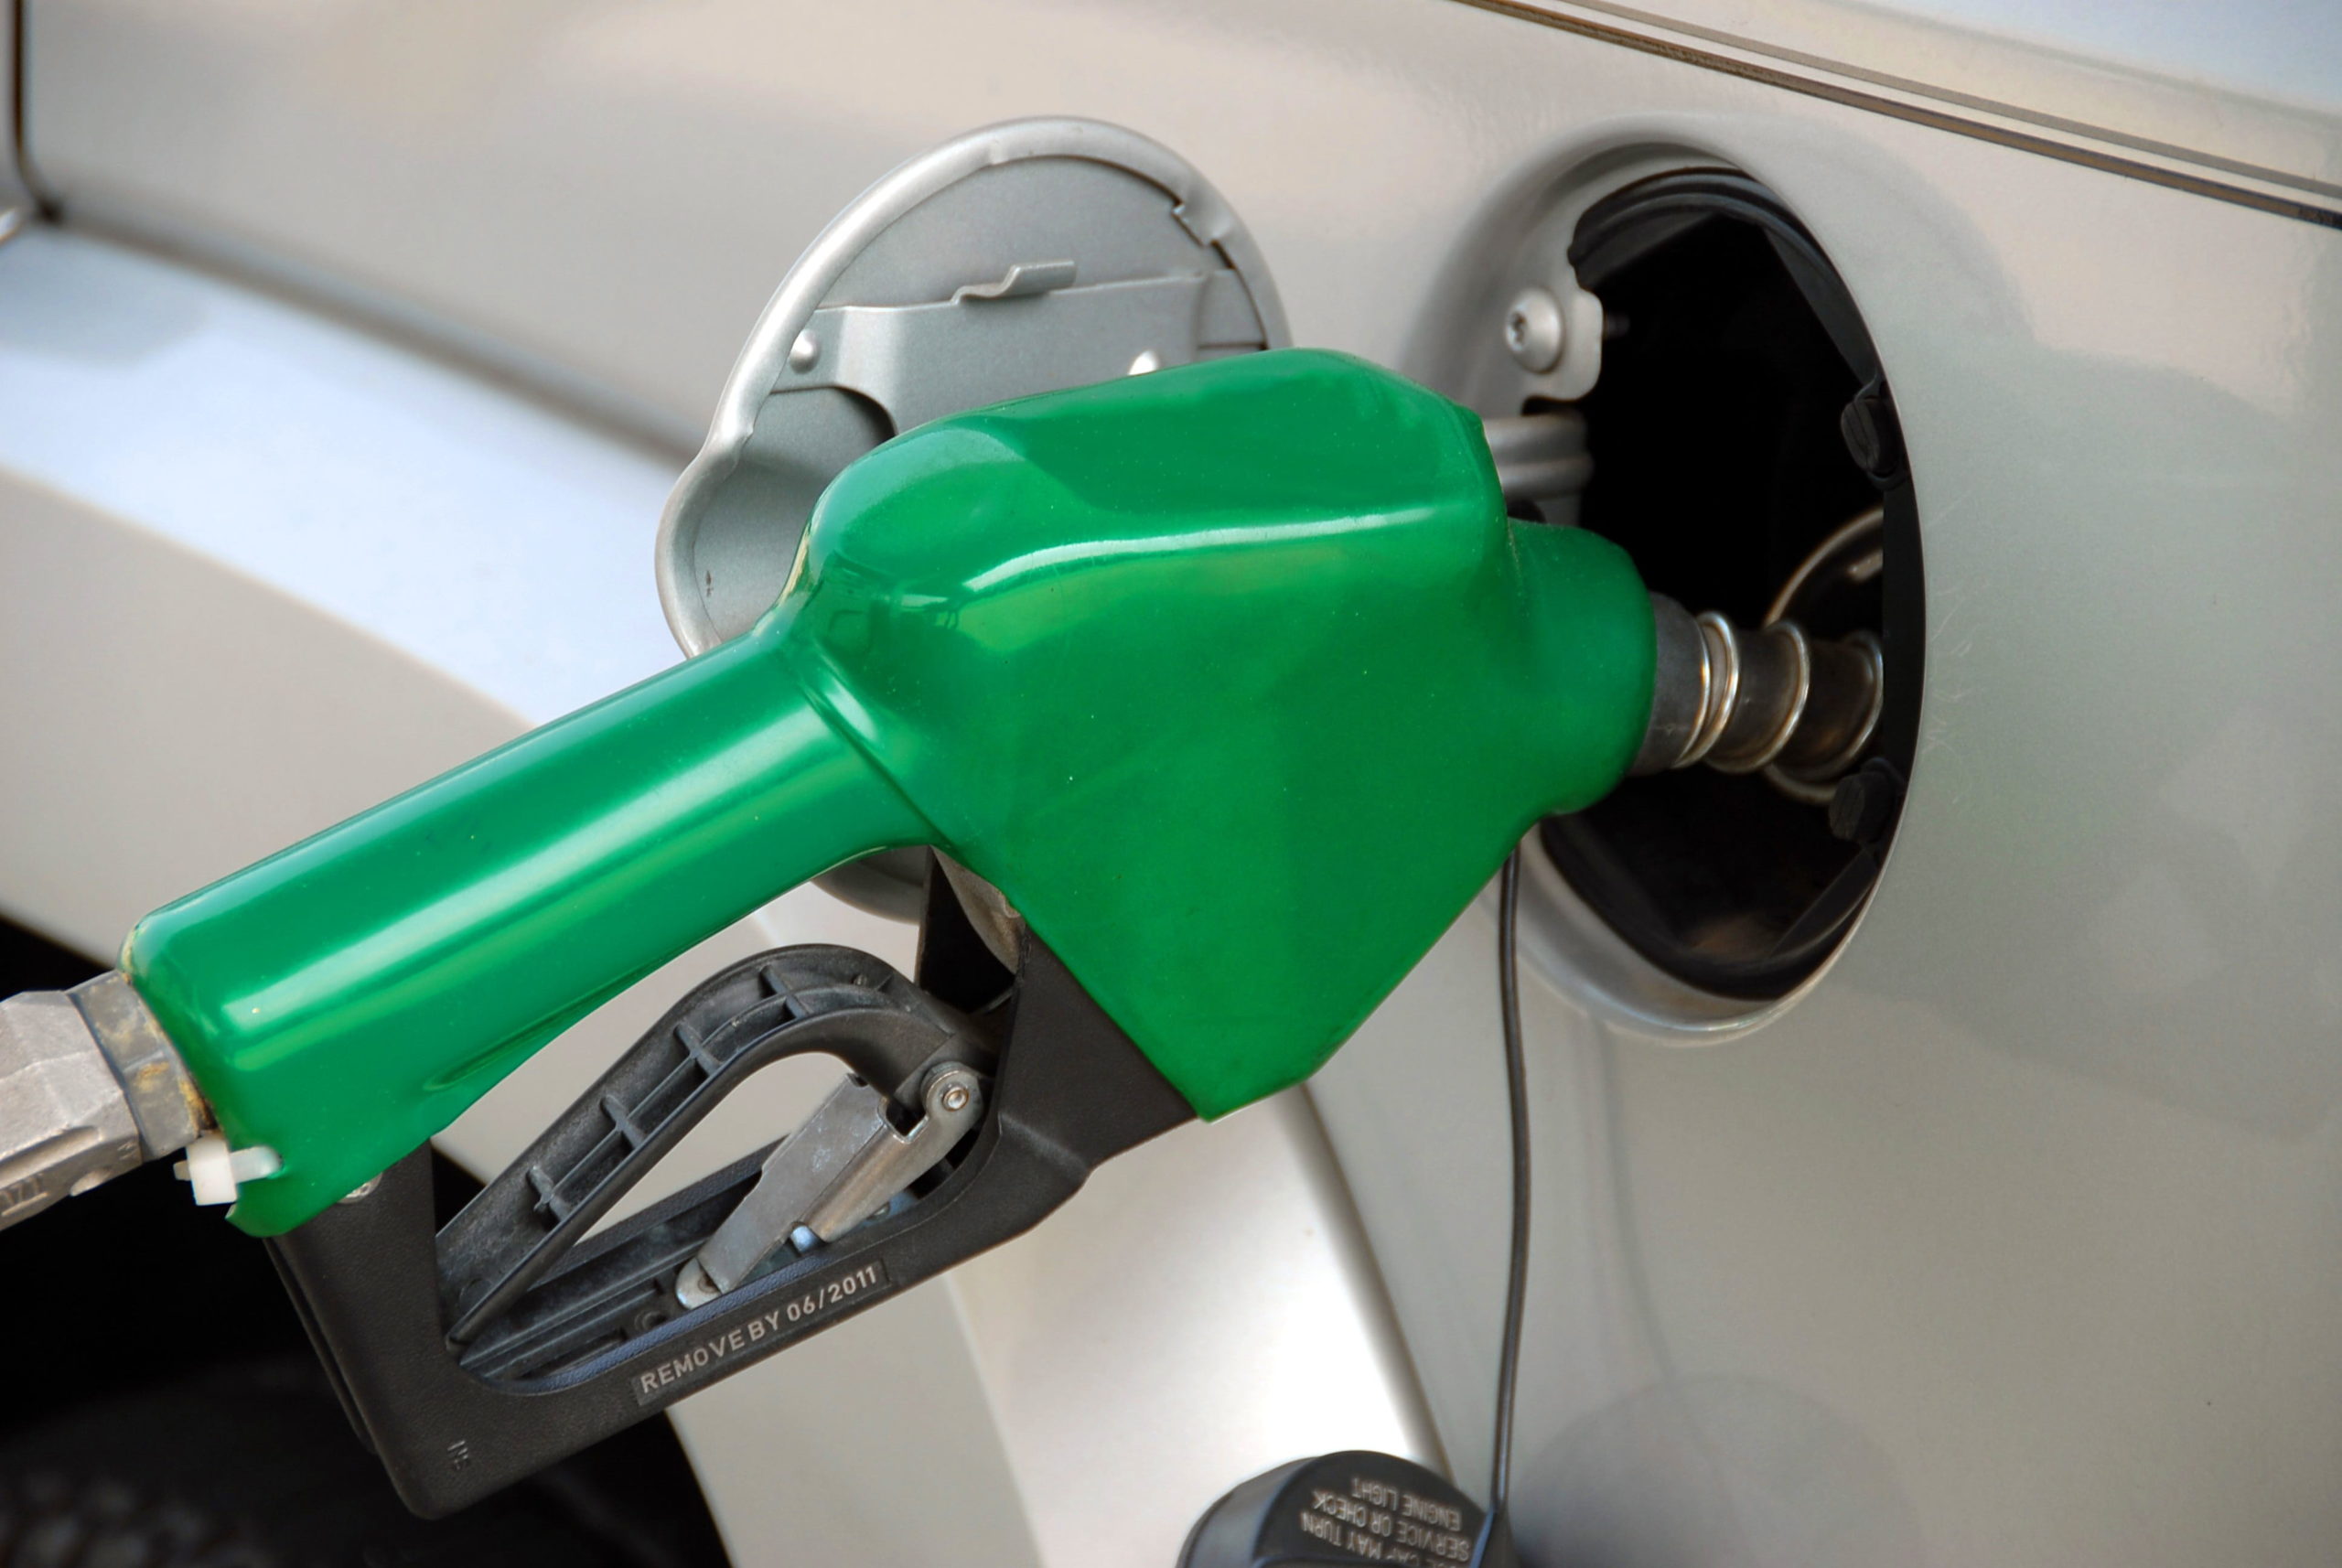 Μέσα στην εβδομάδα ανακοινώσεις για το διευρυμένο fuel pass – Ποιους θα αφορά